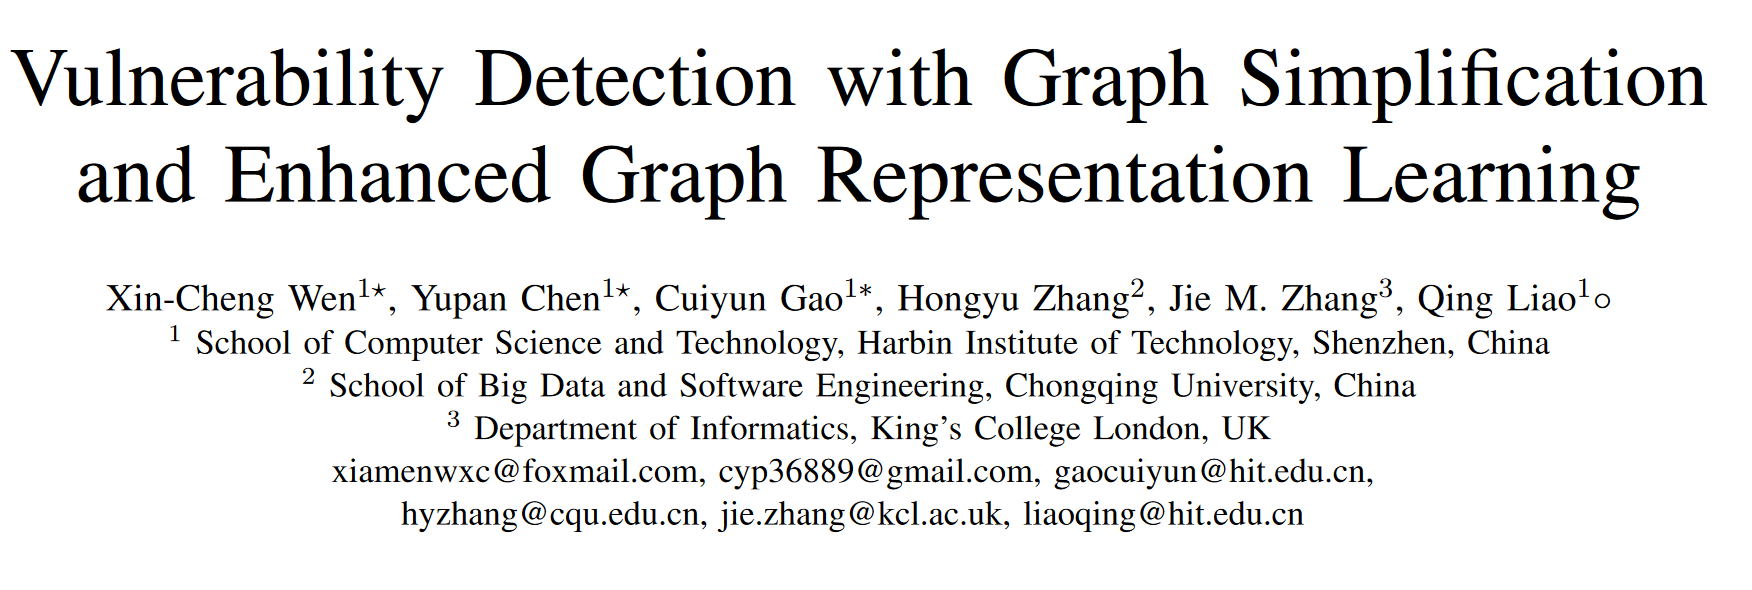 『论文笔记』Vulnerability Detection with Graph Simplification and Enhanced Graph Representation Learning